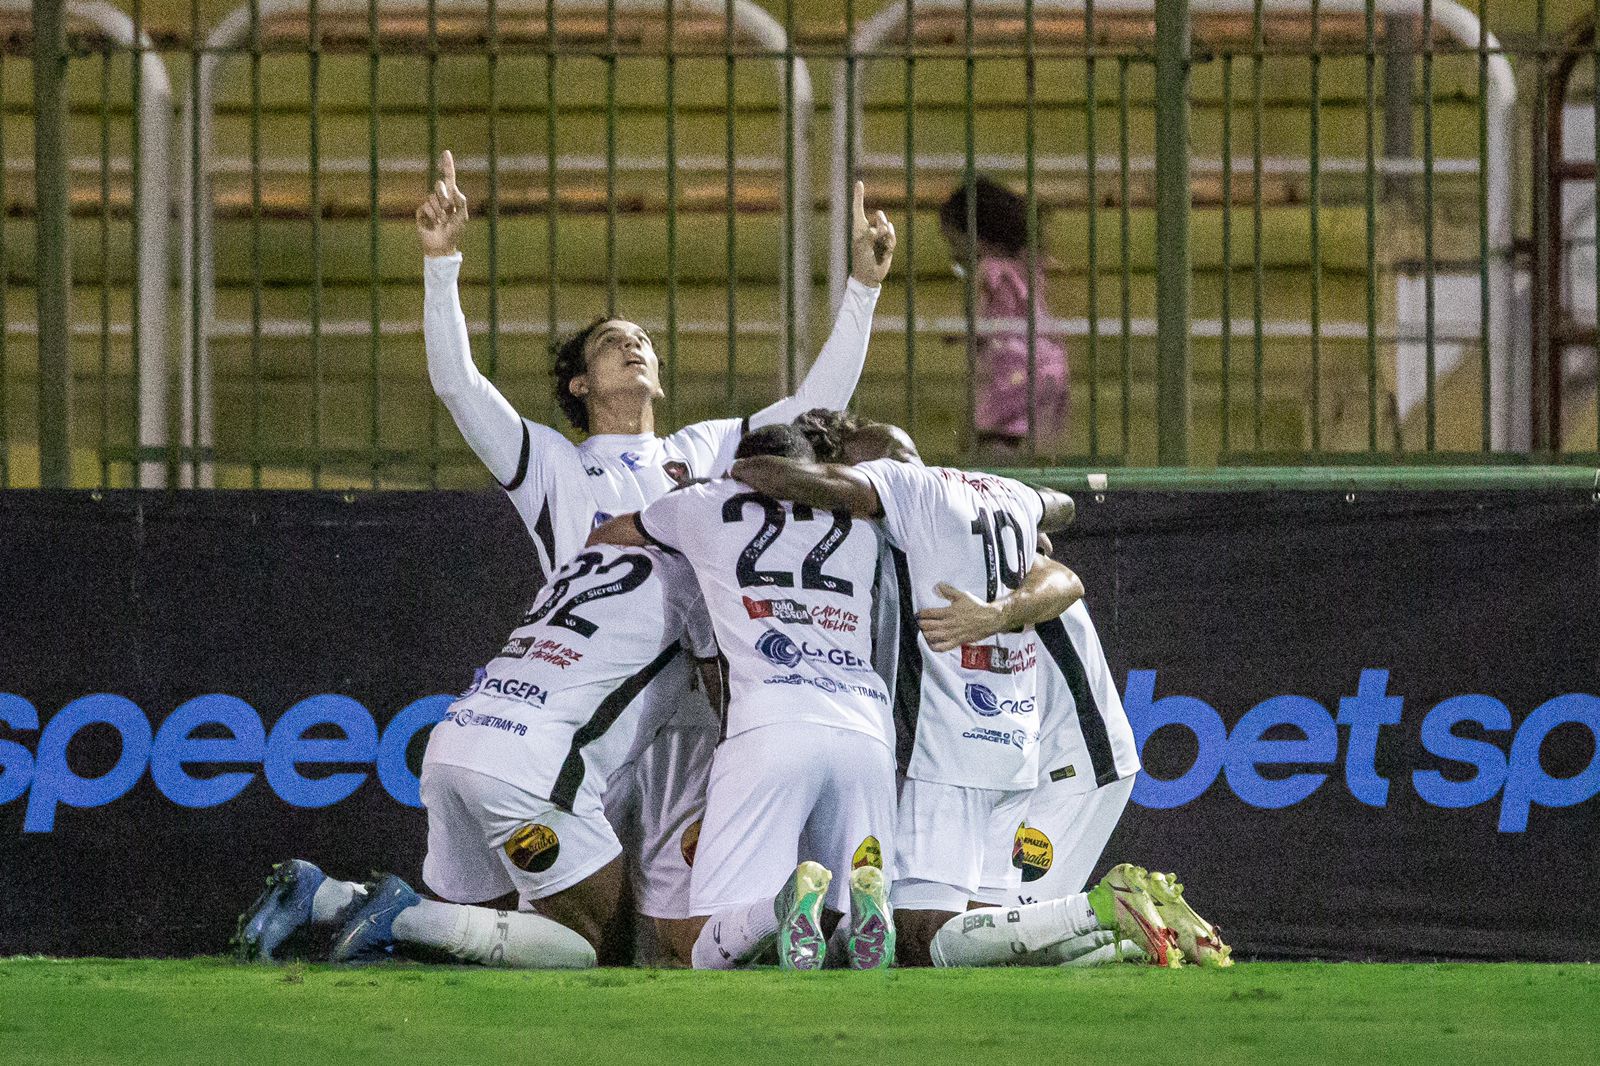 Com gols de Pipico e Edmundo, Botafogo derrota o Volta Redonda no Raulino de Oliveira, segue invicto e assume a vice-liderança da série C